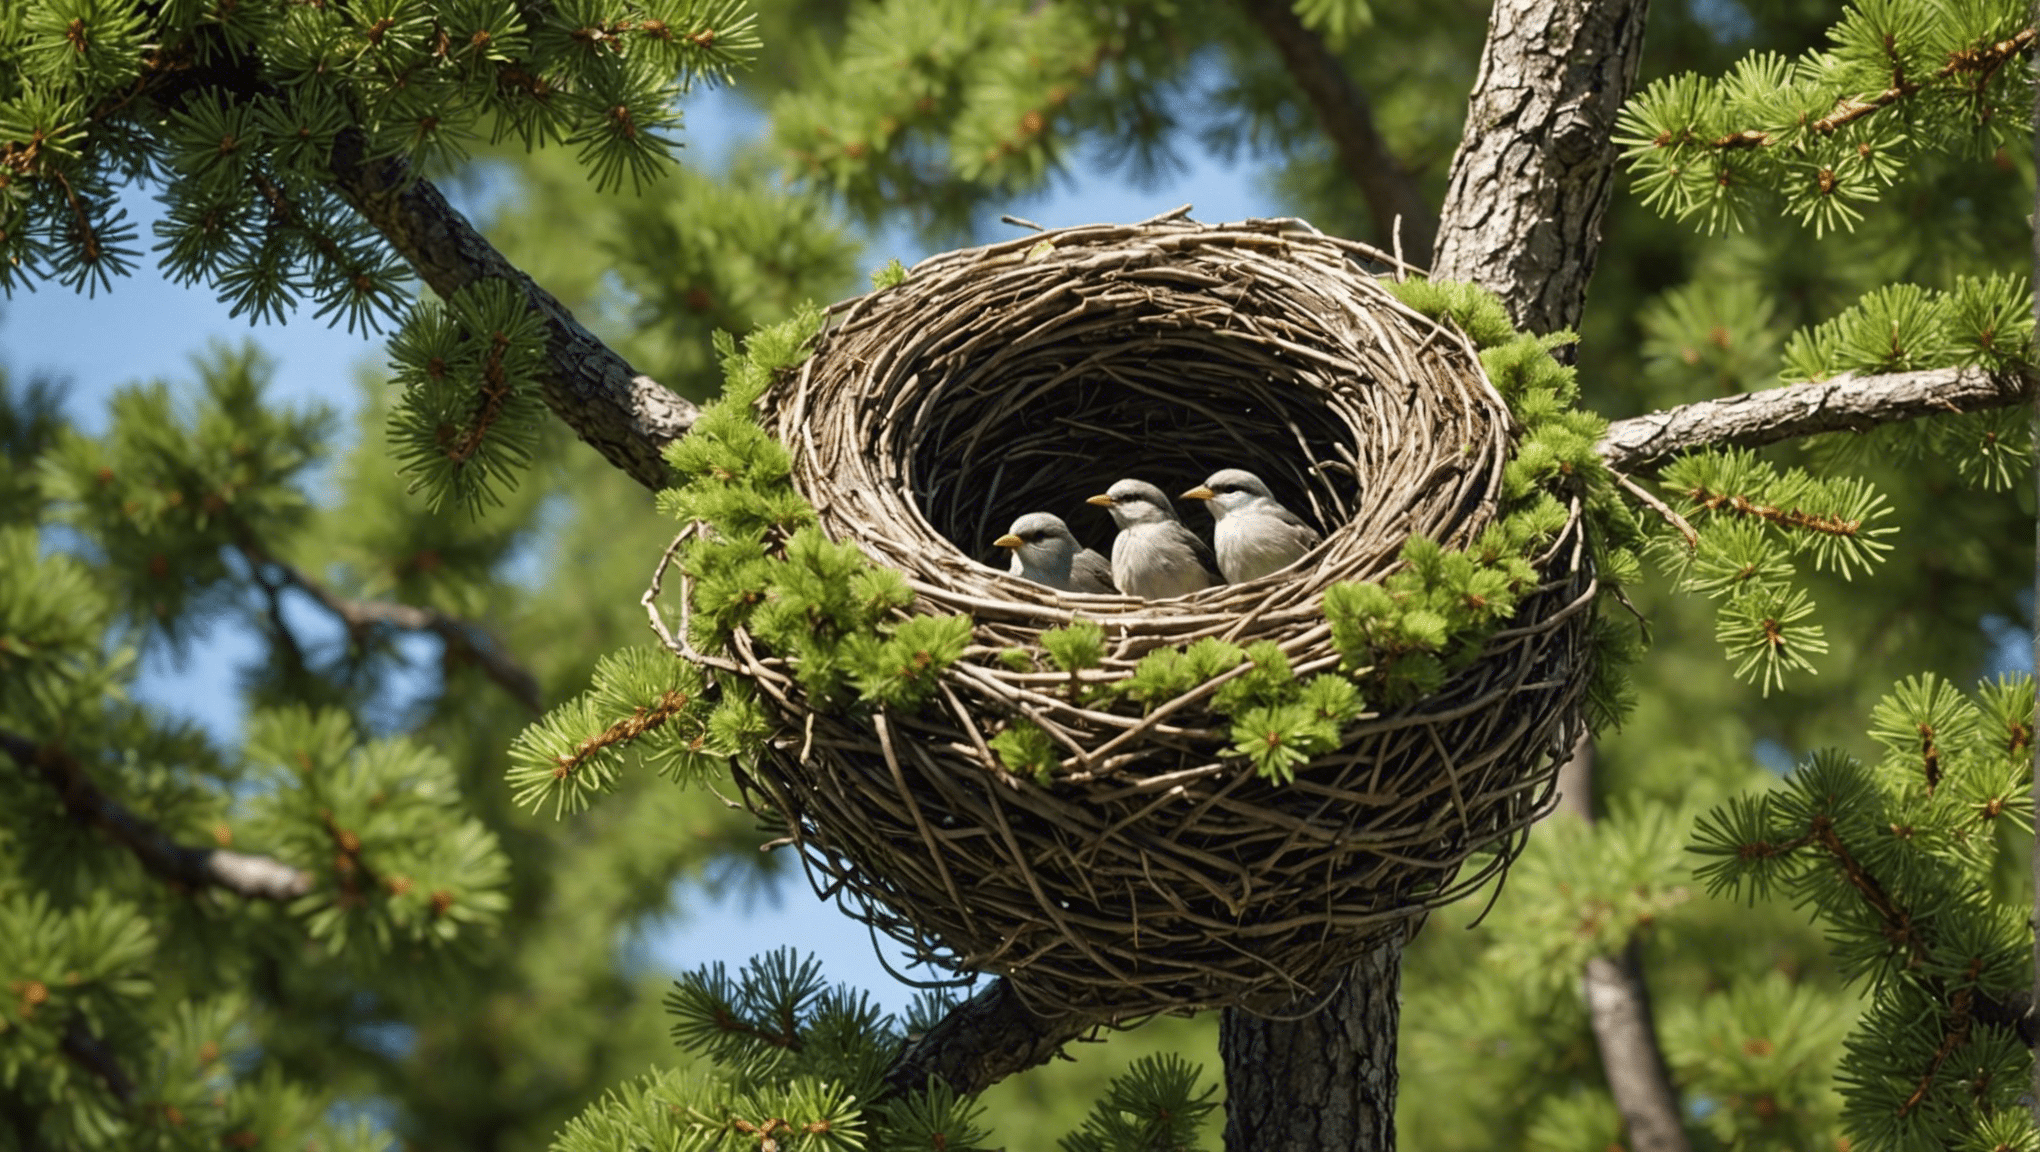 Entdecken Sie in diesem informativen Artikel, was die Vogelnestfichte so einzigartig und ansprechend macht. Informieren Sie sich über ihre besonderen Merkmale und Eigenschaften, die sie von anderen Bäumen unterscheiden.